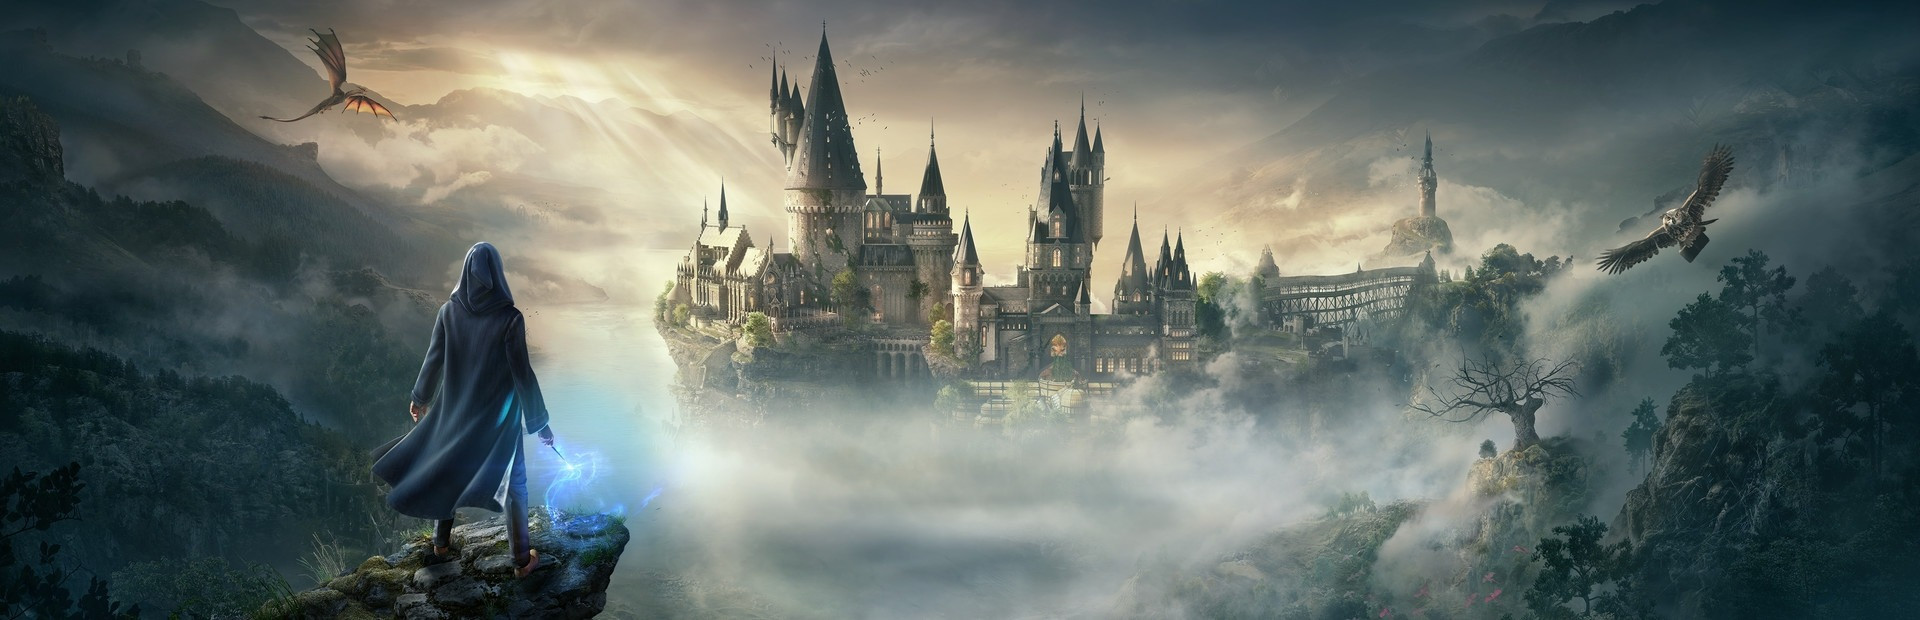 Sẵn sàng khám phá thế giới phép thuật tuyệt diệu của trường Hogwarts qua trò chơi Horgwarts Legacy PS5 đầy chất lượng và giải trí. Bạn sẽ được trải nghiệm cuộc phiêu lưu hấp dẫn nhất từ trước tới nay với những thử thách đầy thử thách và những bí mật đang chờ đón để khám phá.